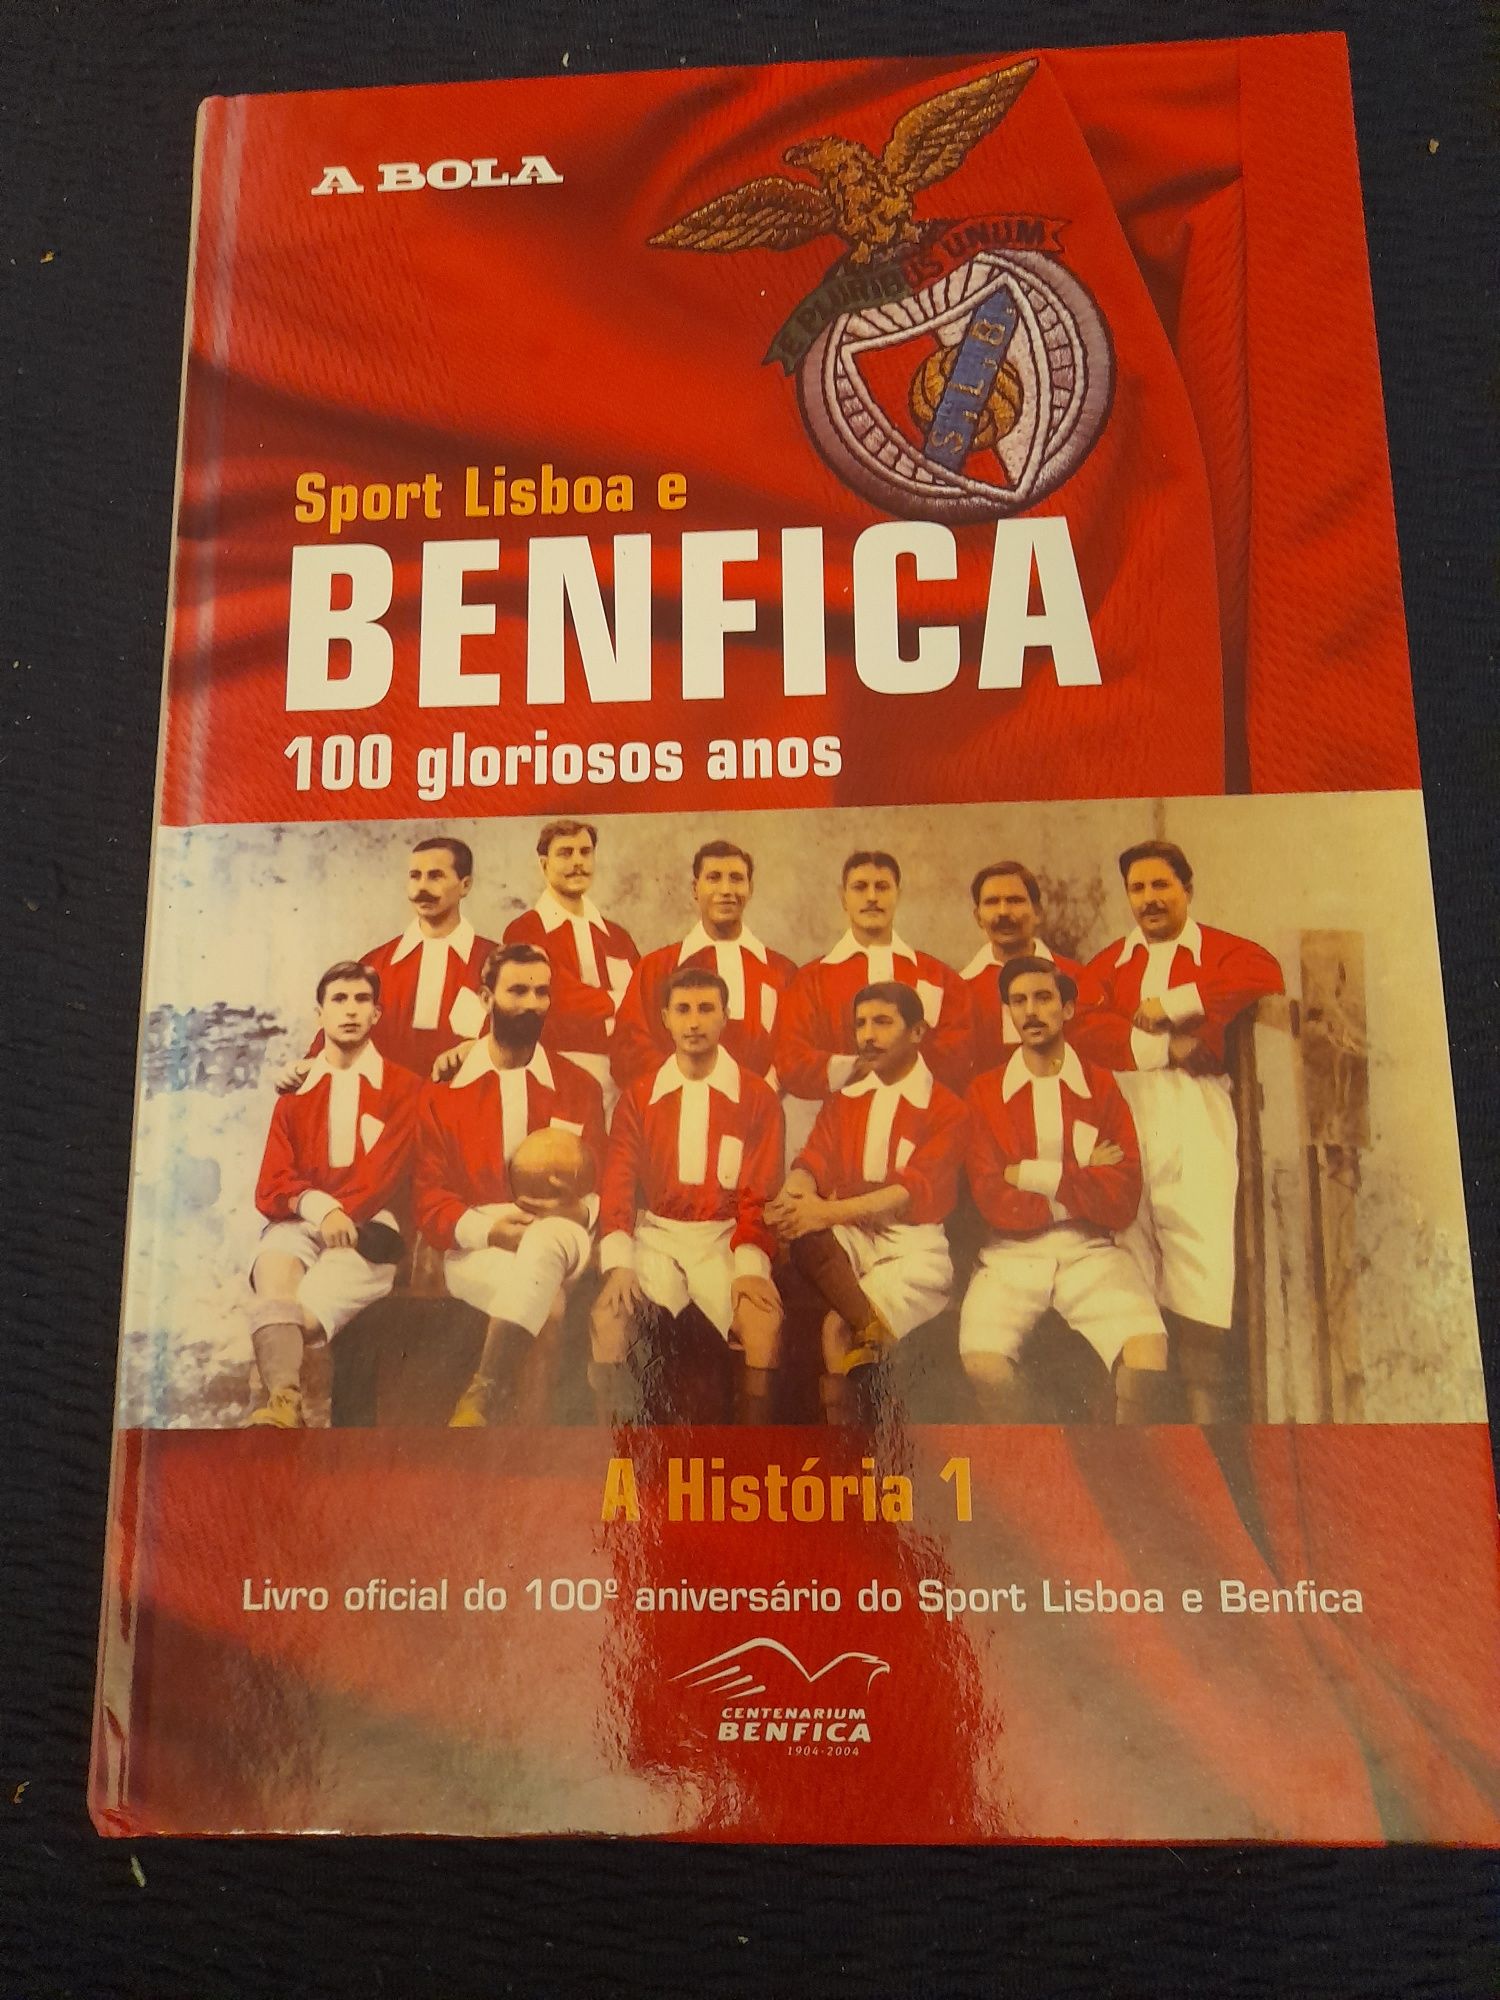 Sport Lisboa e Benfica 100 gloriosos anos